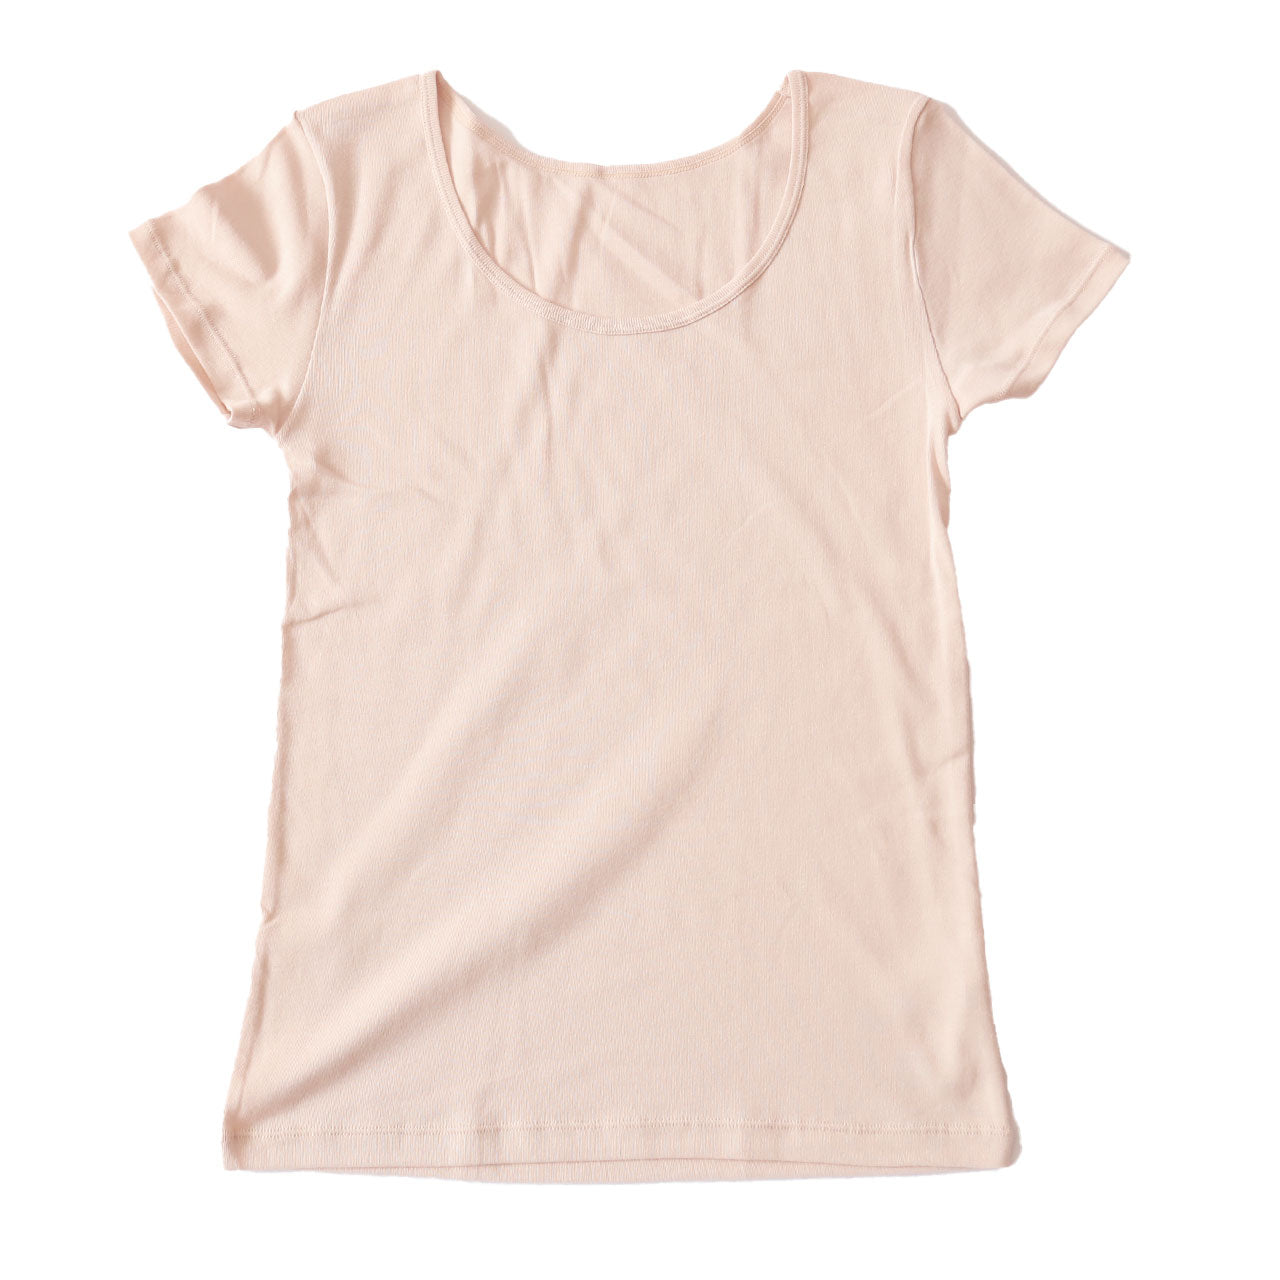 綿100% インナー レディース 半袖 2分袖 tシャツ S～LL 肌着 綿 シャツ 下着 女性 婦人 コットン 無地 白 グレー 黒 ベージュ シンプル